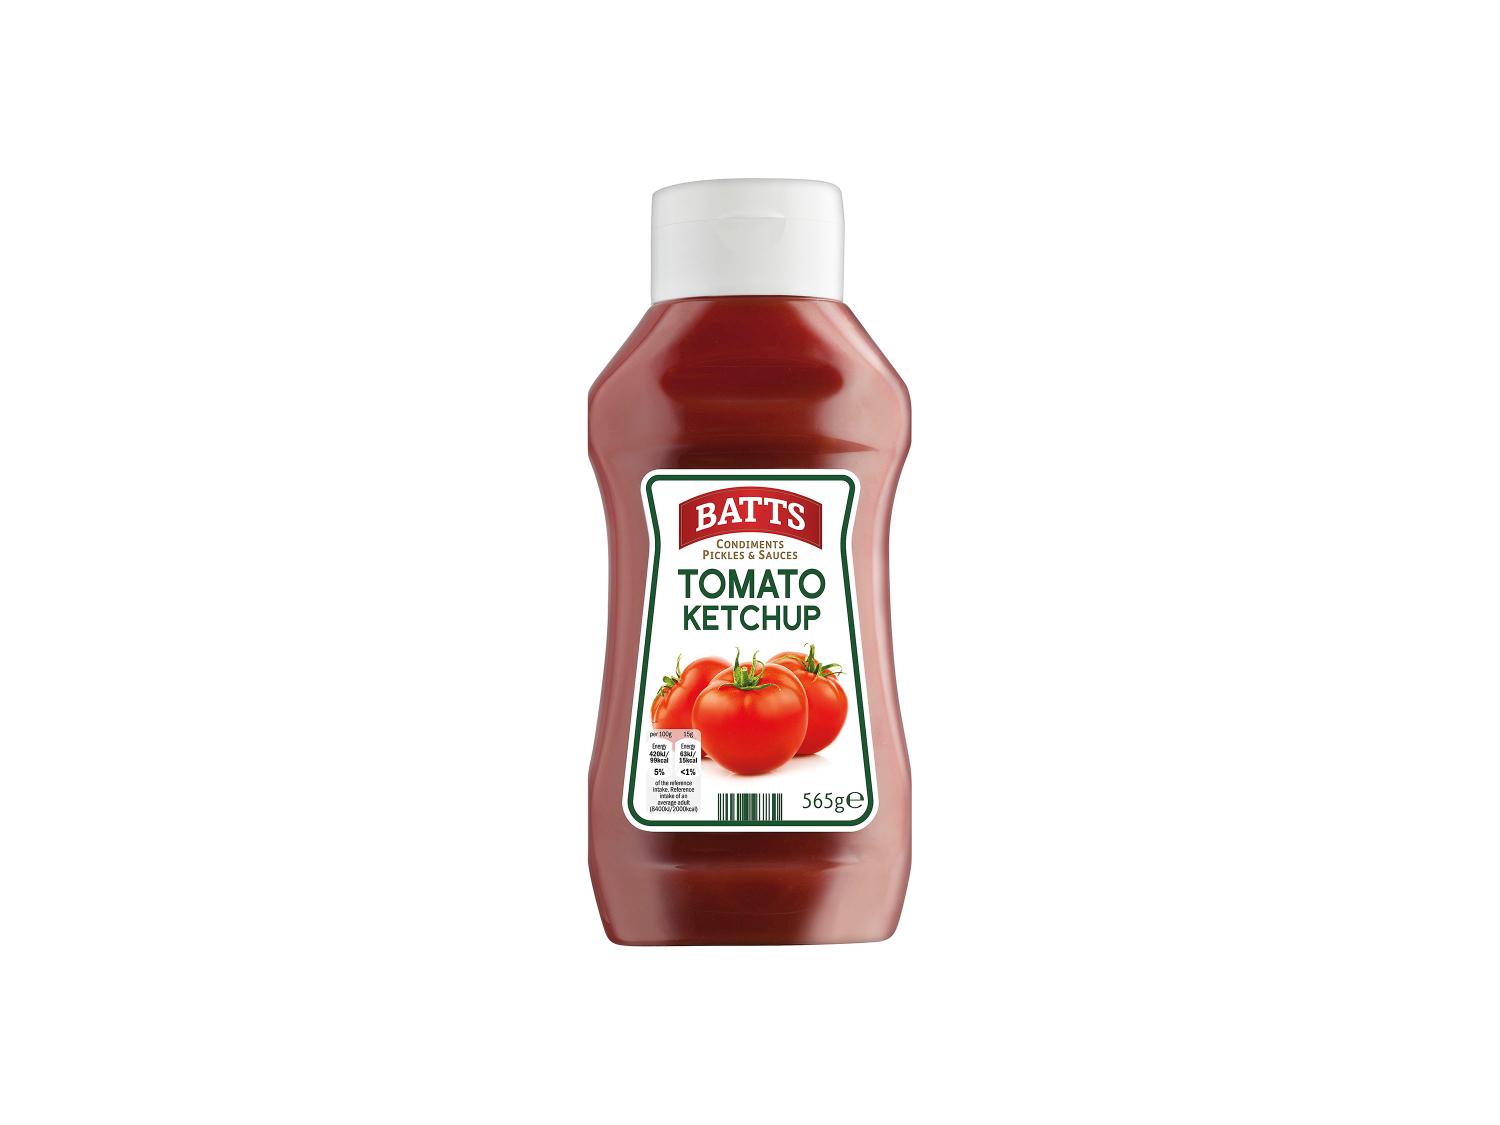 Batts Tomato Ketchup – 560g